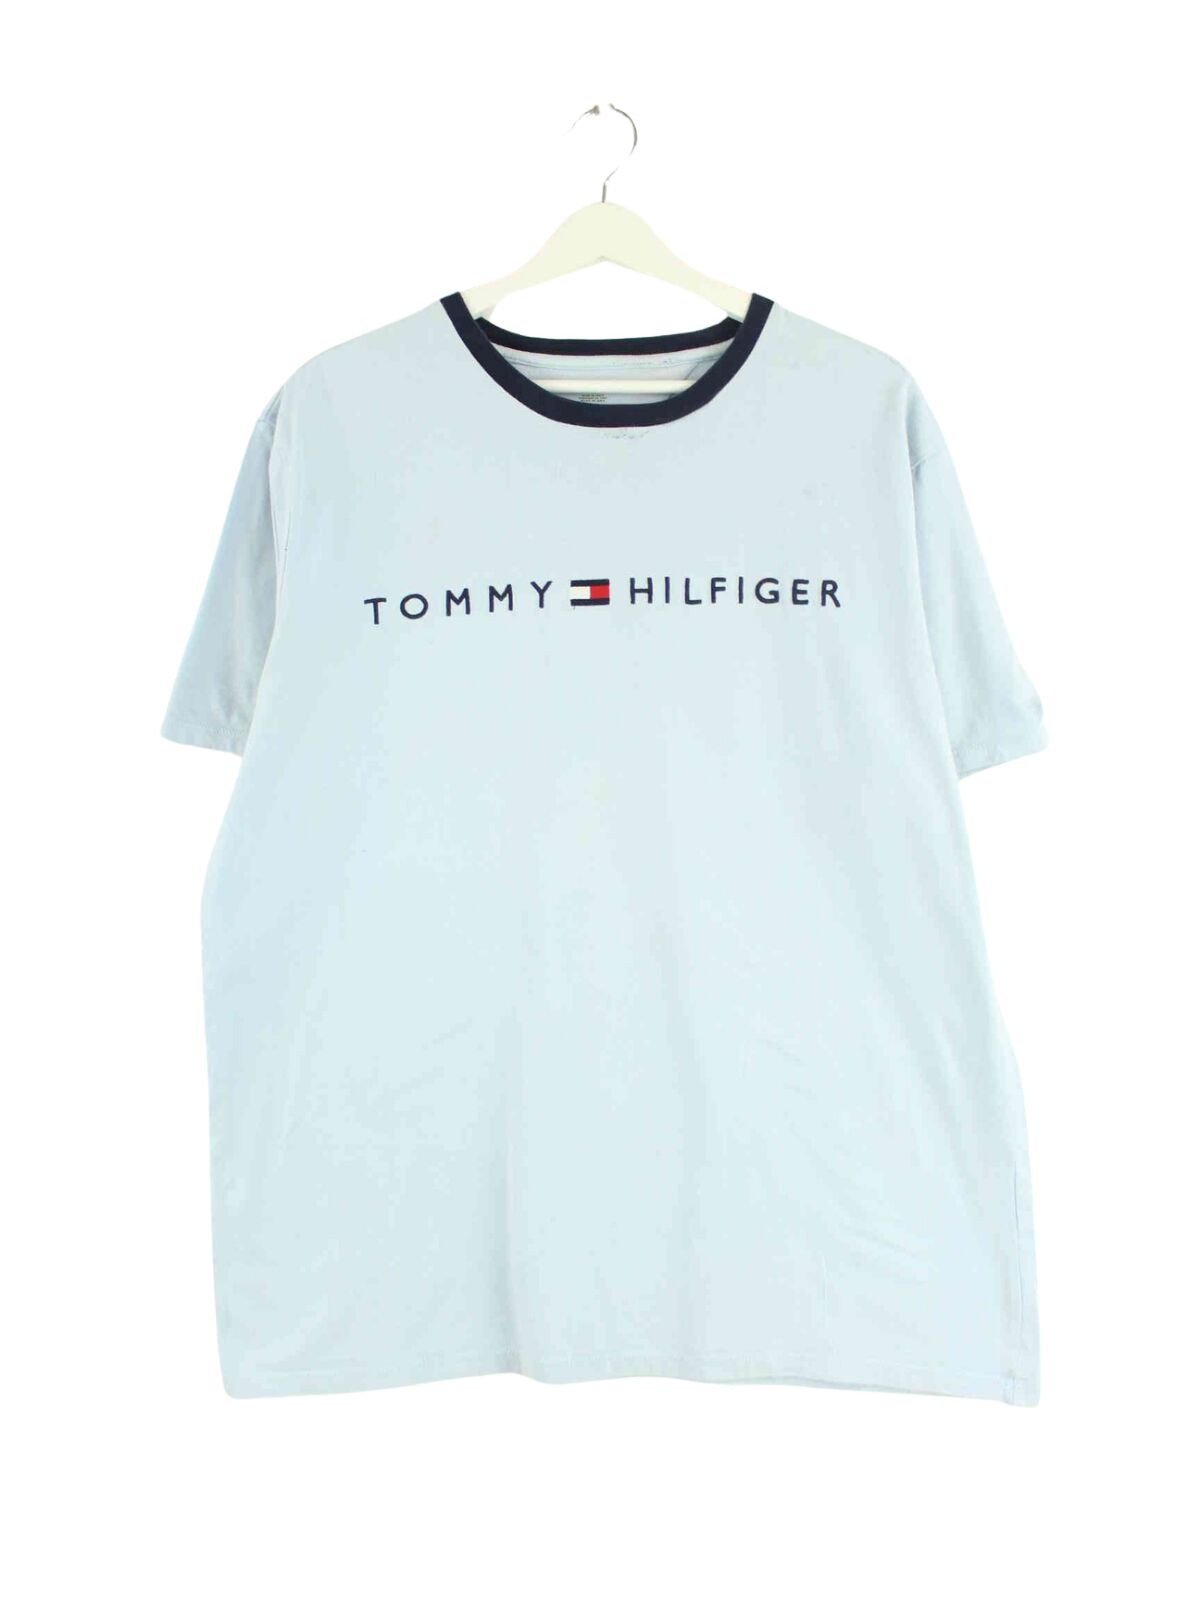 Tommy Hilfiger Embroidered Logo T-Shirt Blau L (front image)